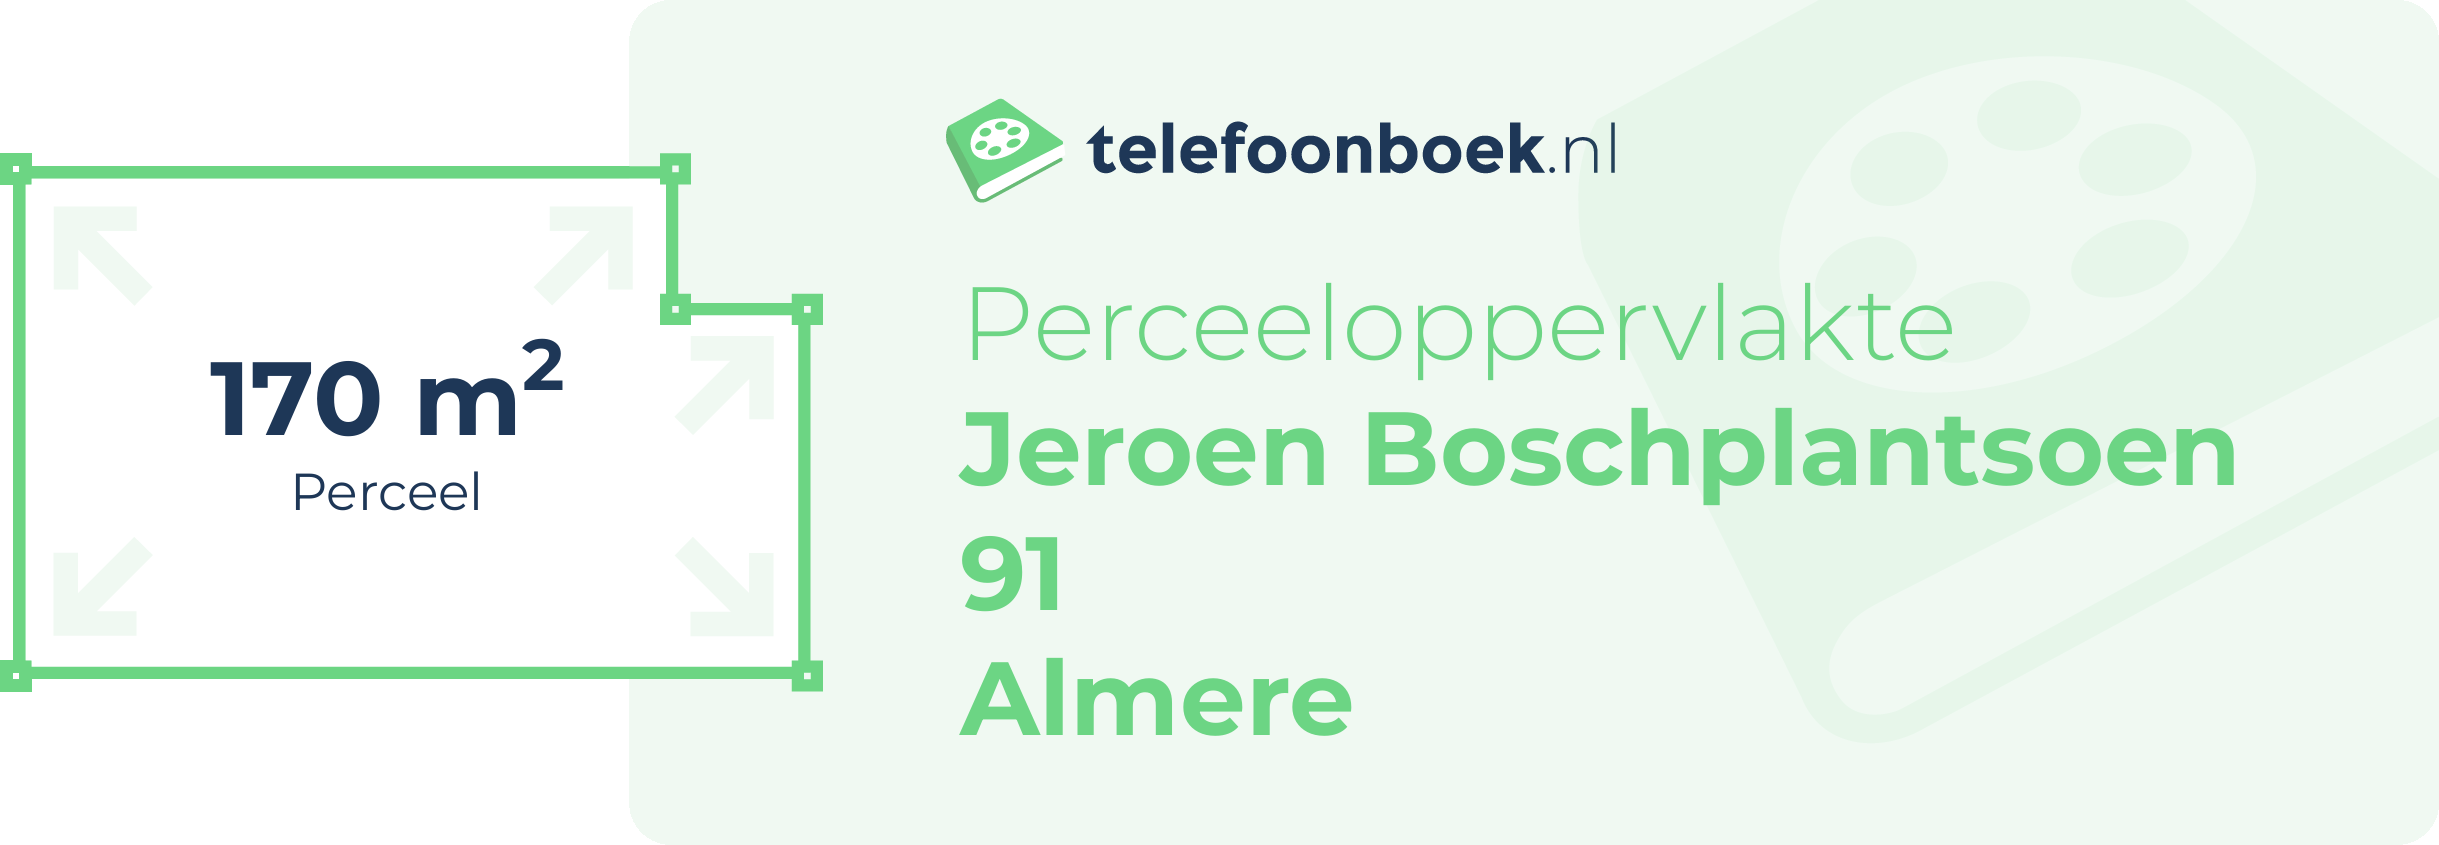 Perceeloppervlakte Jeroen Boschplantsoen 91 Almere